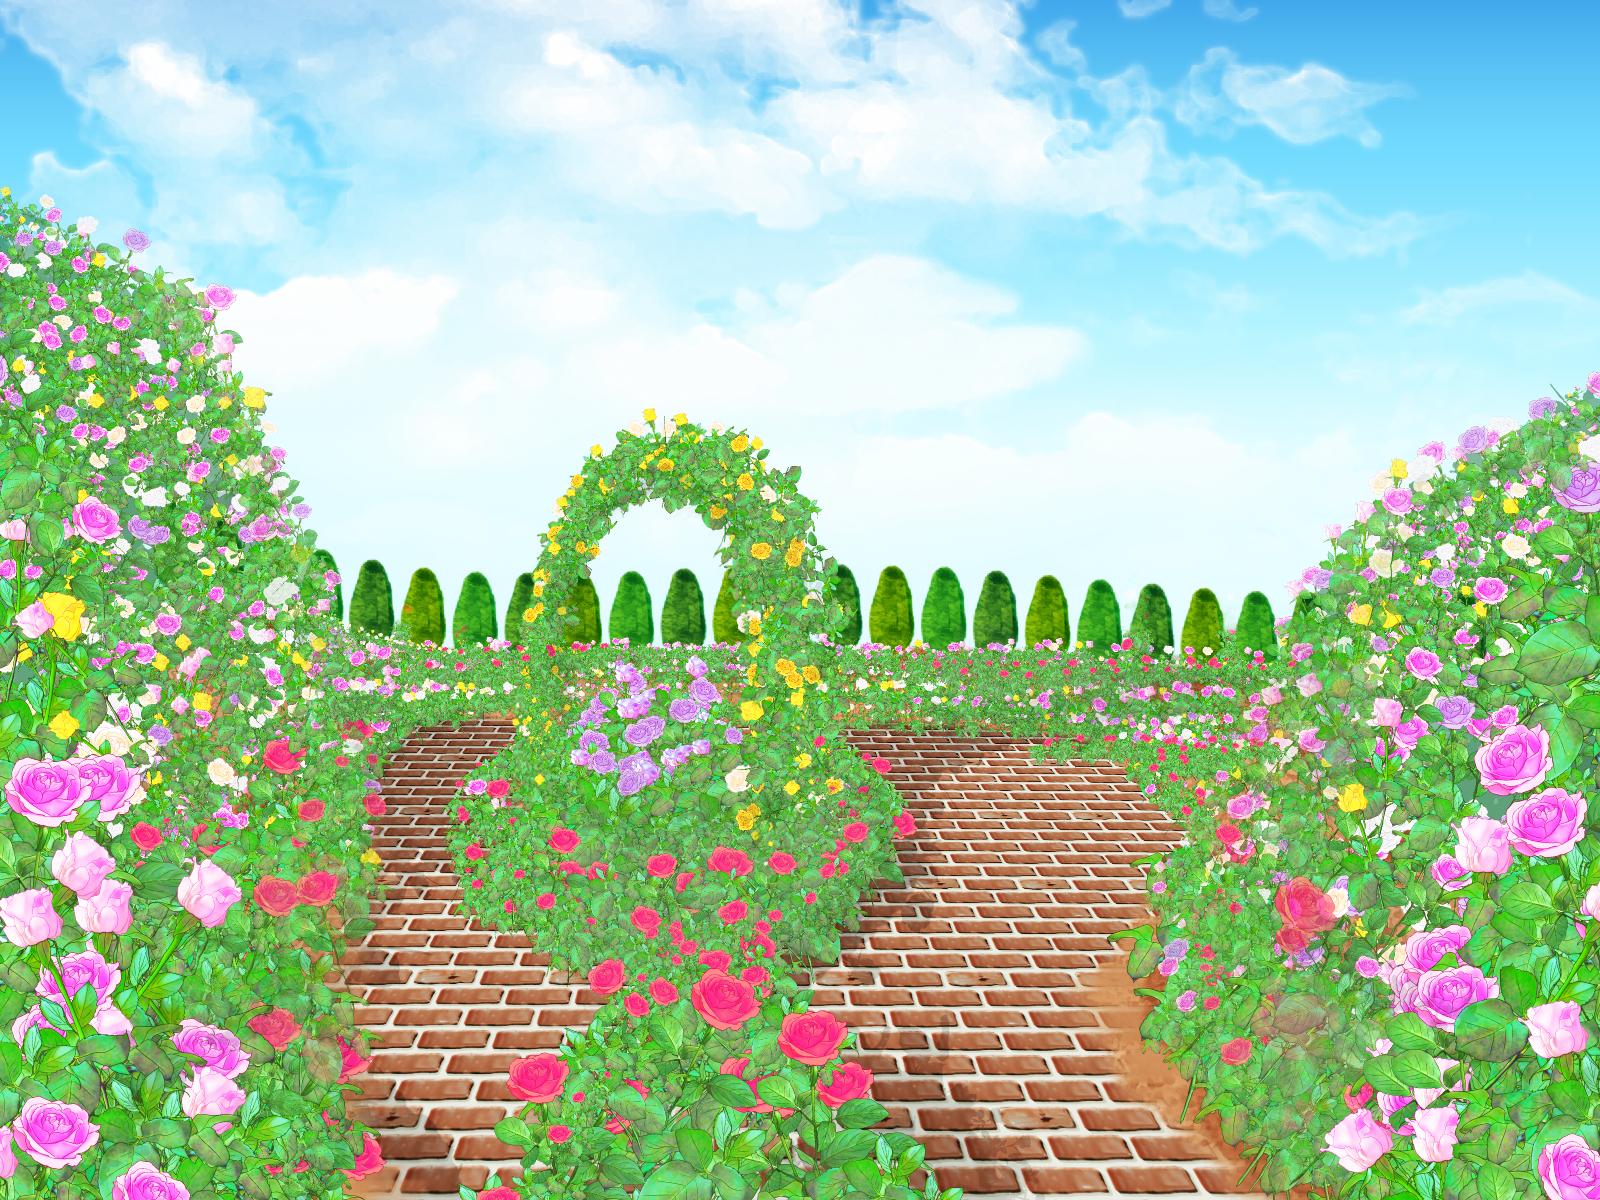 【3/1〜】びわ湖大津館のイングリッシュガーデンが営業再開します。3/1〜3/14は来園者に花の種がもらえます♪